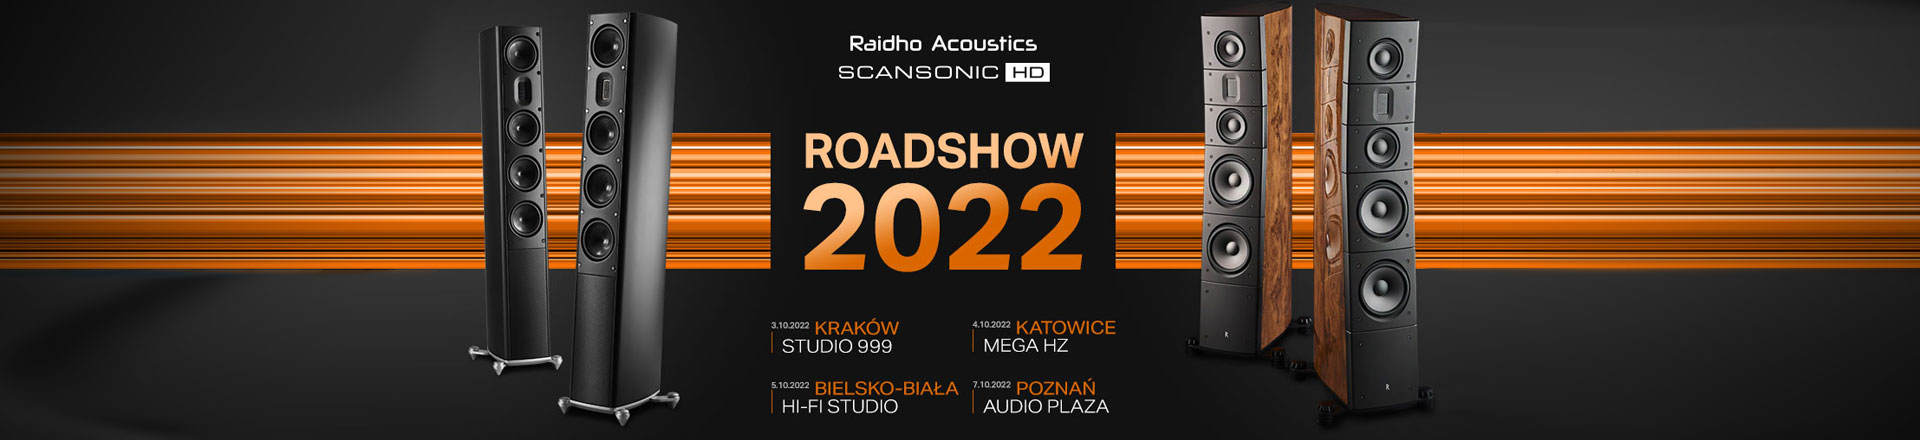 RAIDHO & SCANSONIC HD - w 4 dni w 4 miastach Roadshow 2022